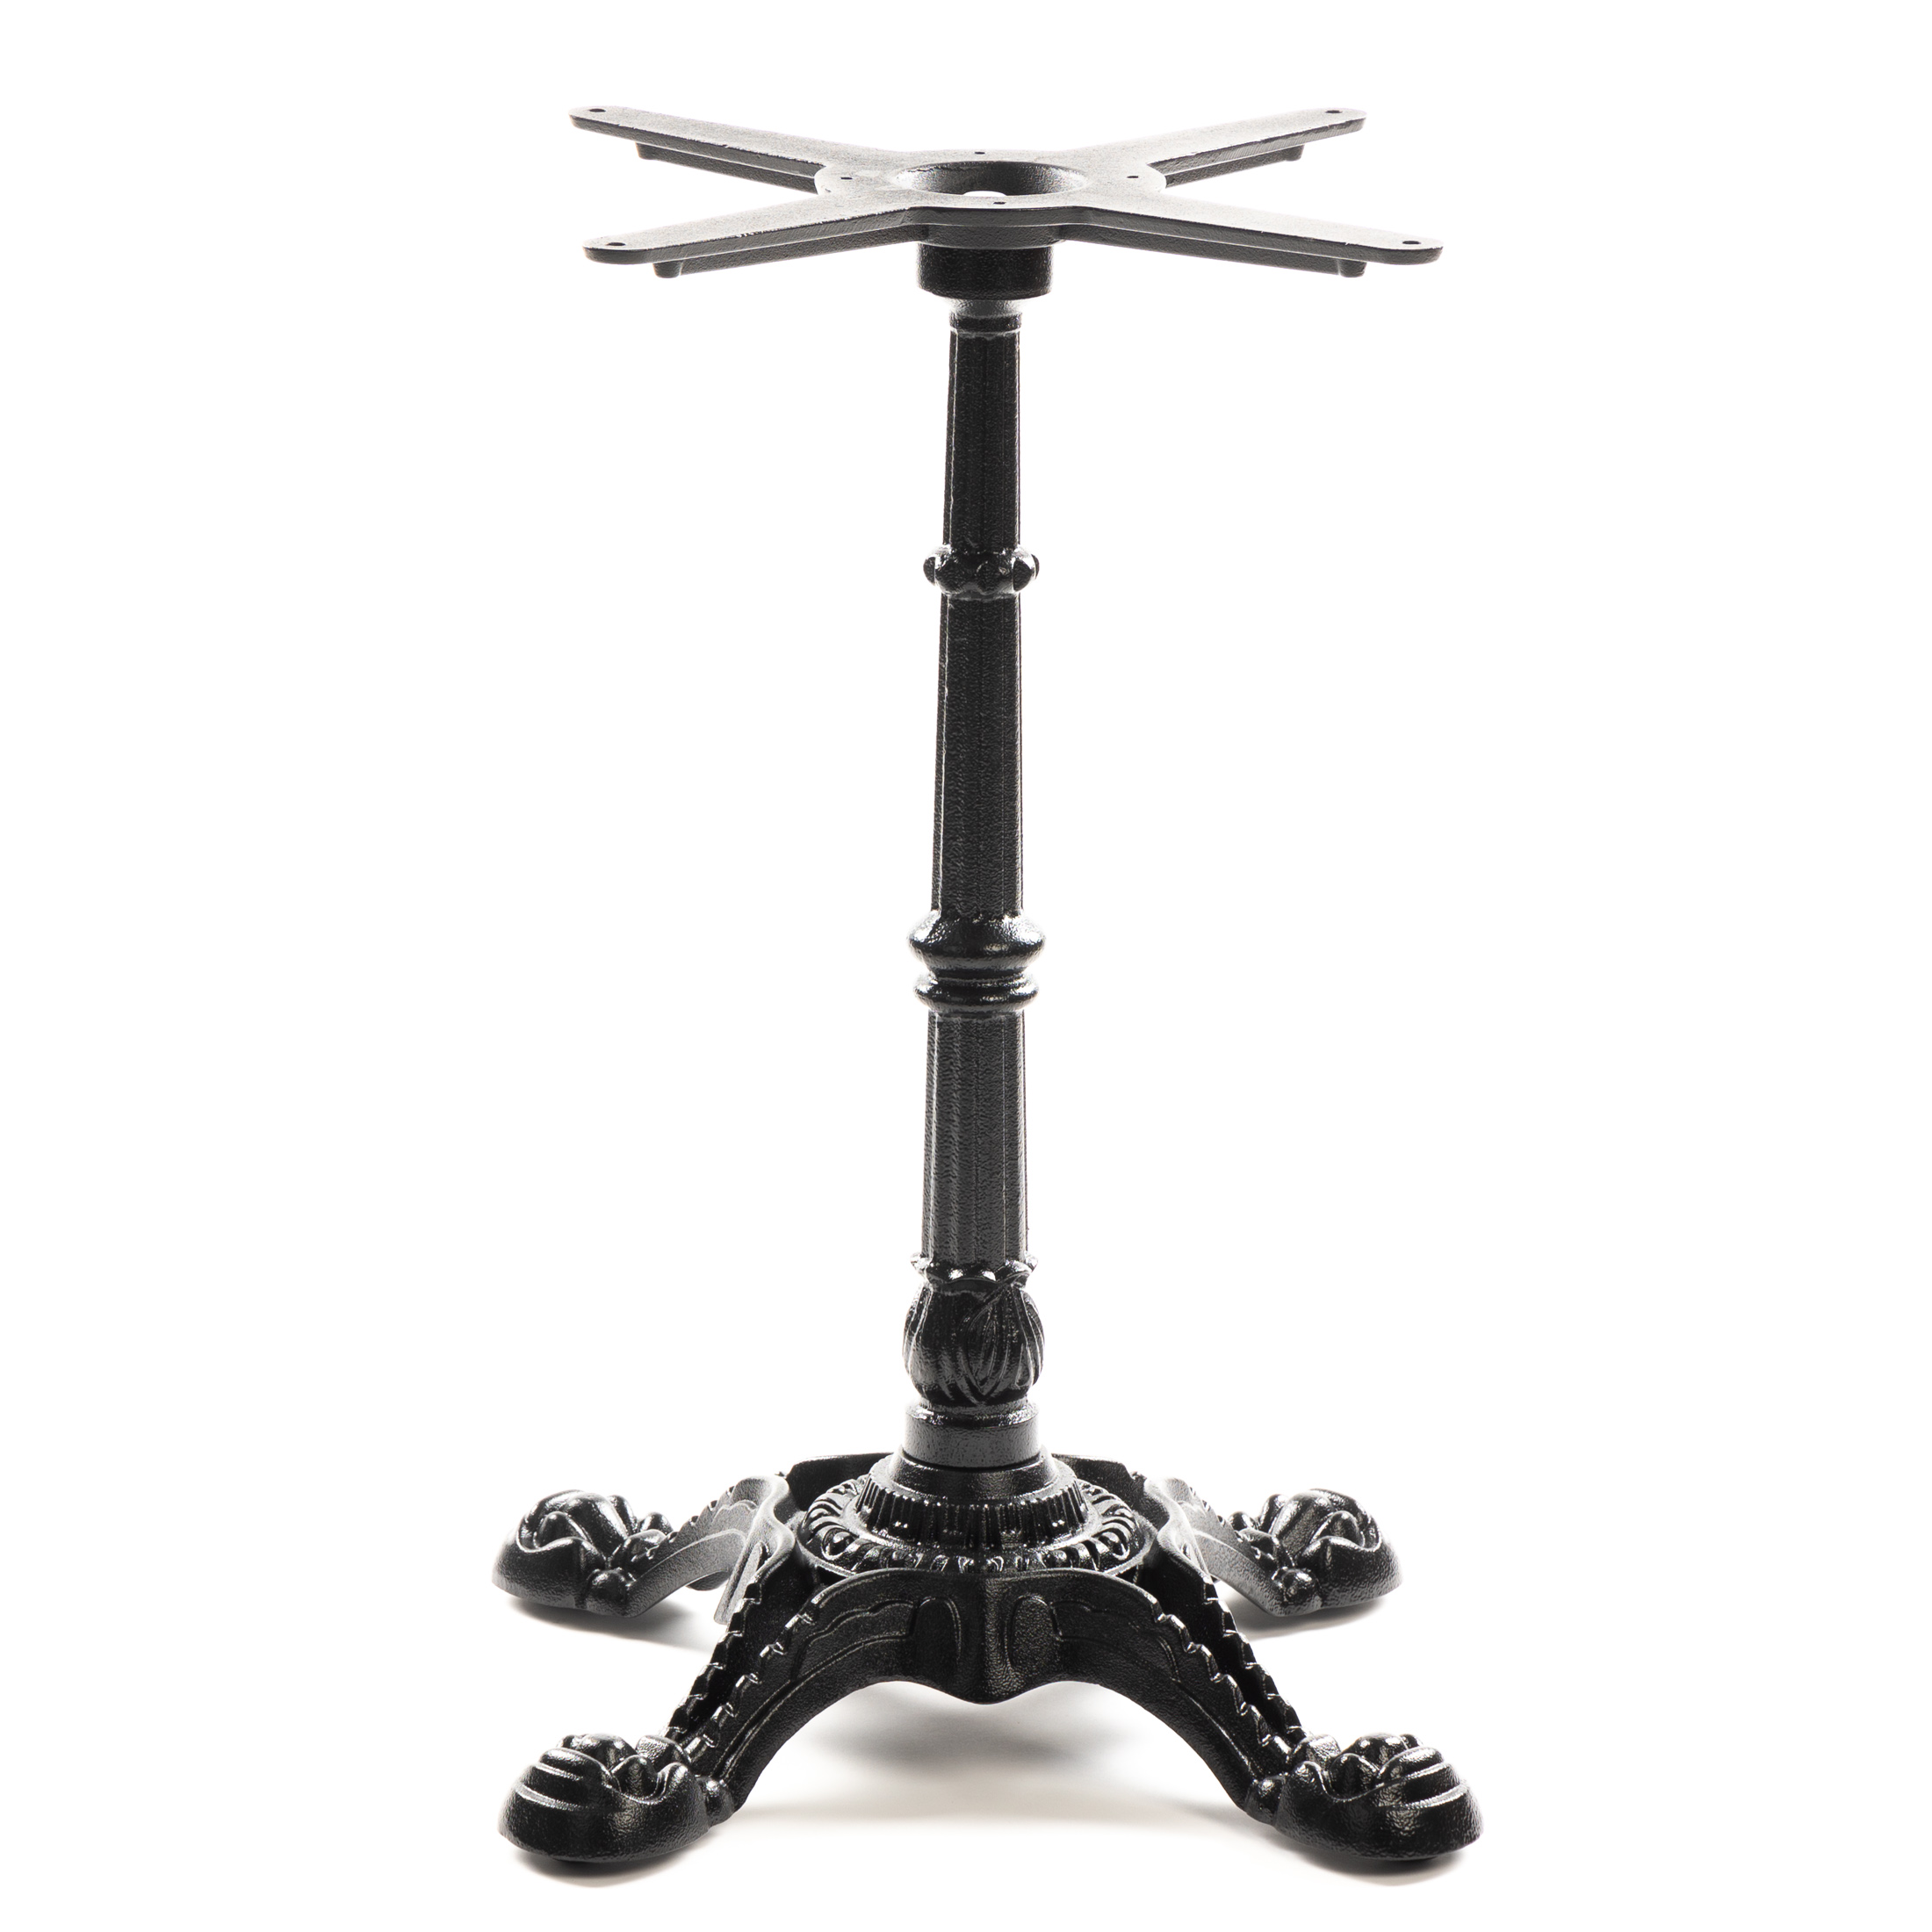 Tischgestell PJ7018 aus Gusseisen, schwarz, vierzehig, antikes Design